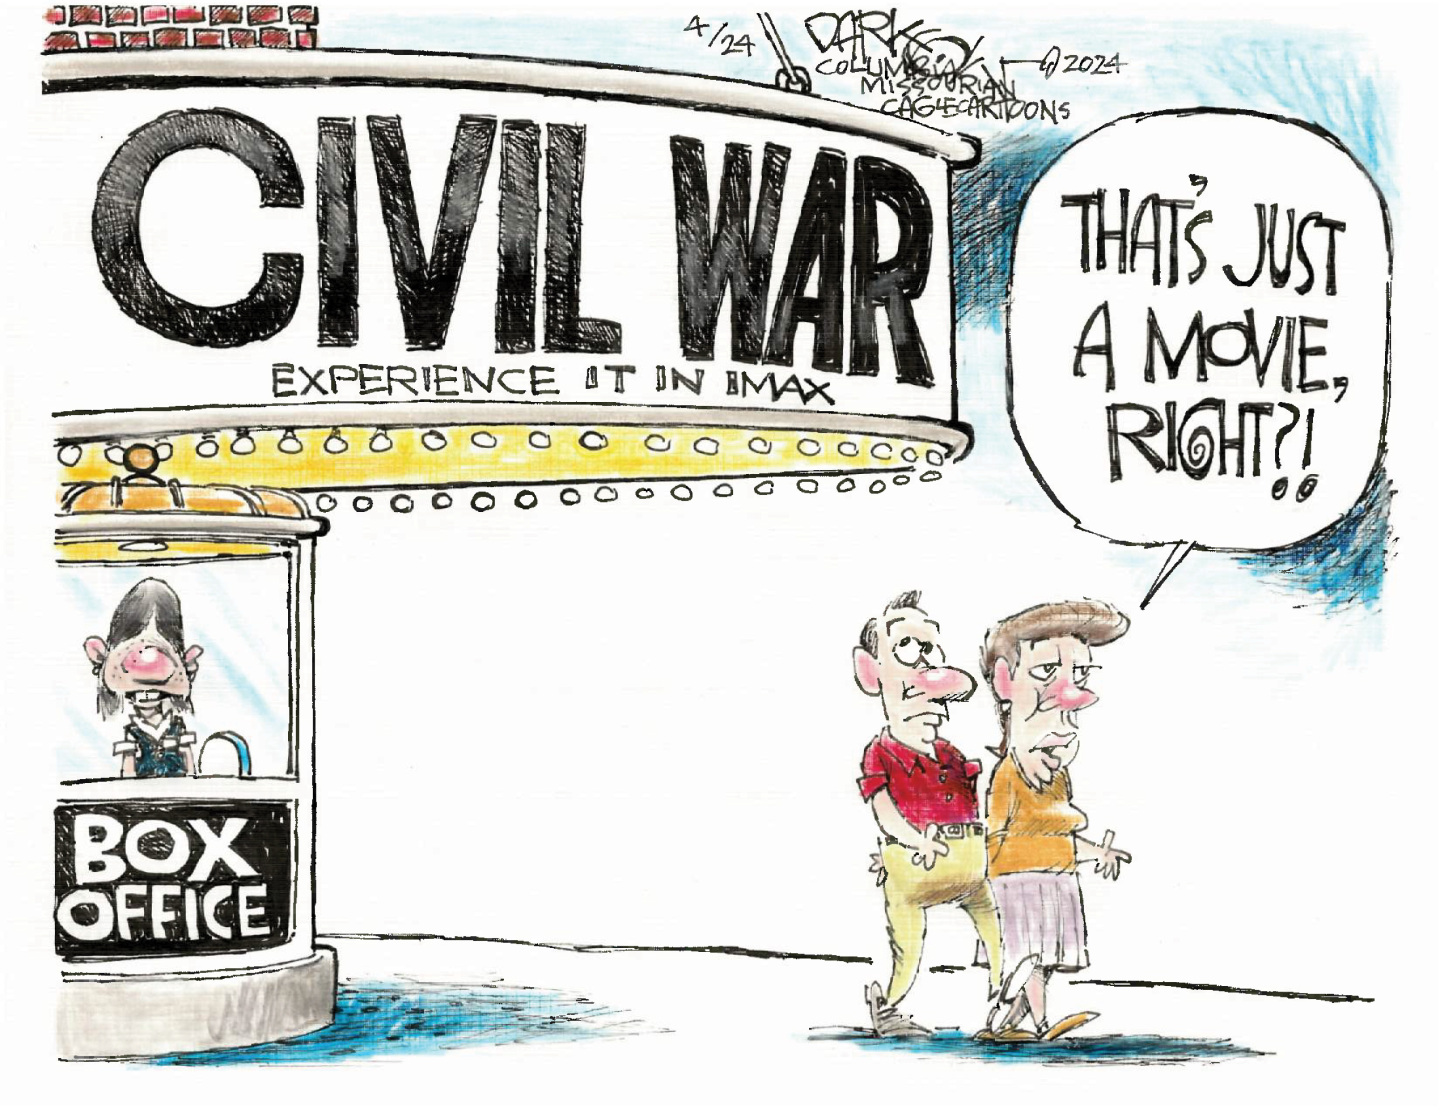  Today's political cartoons - April 24, 2024 